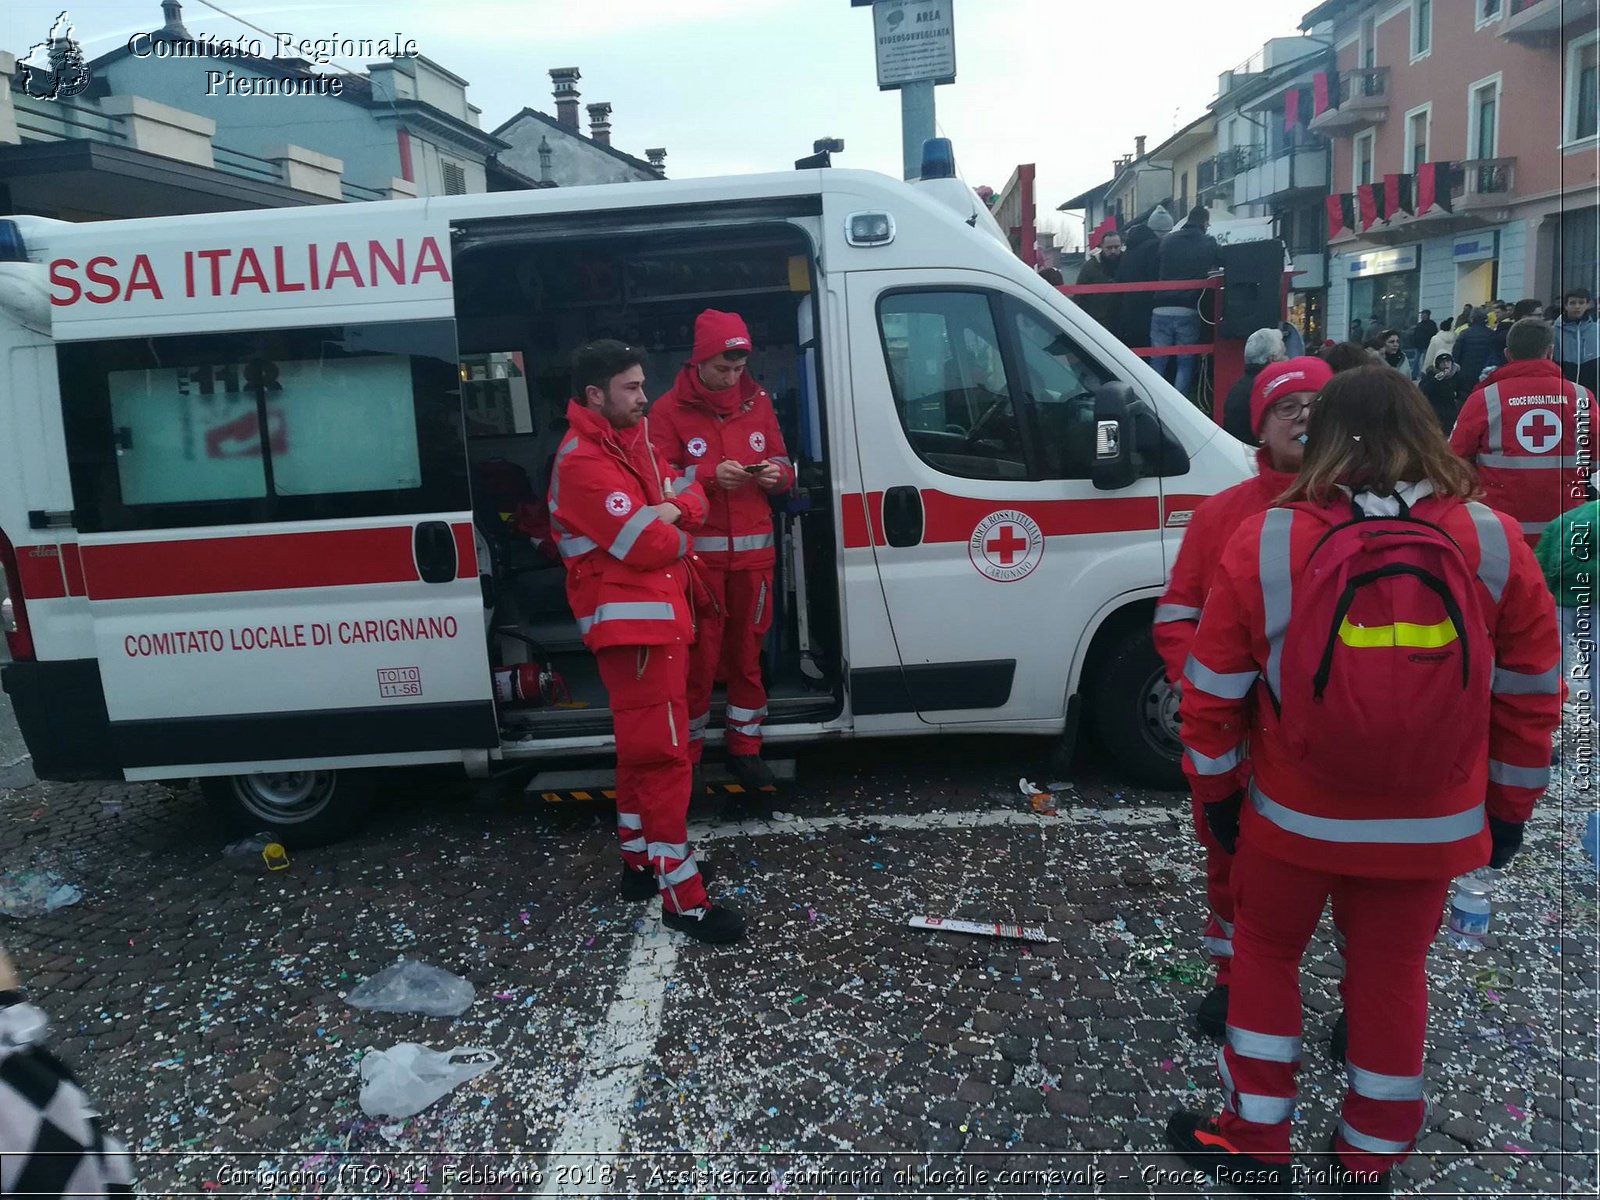 Carignano (TO) 11 Febbraio 2018 - Assistenza sanitaria al locale carnevale - Croce Rossa Italiana- Comitato Regionale del Piemonte